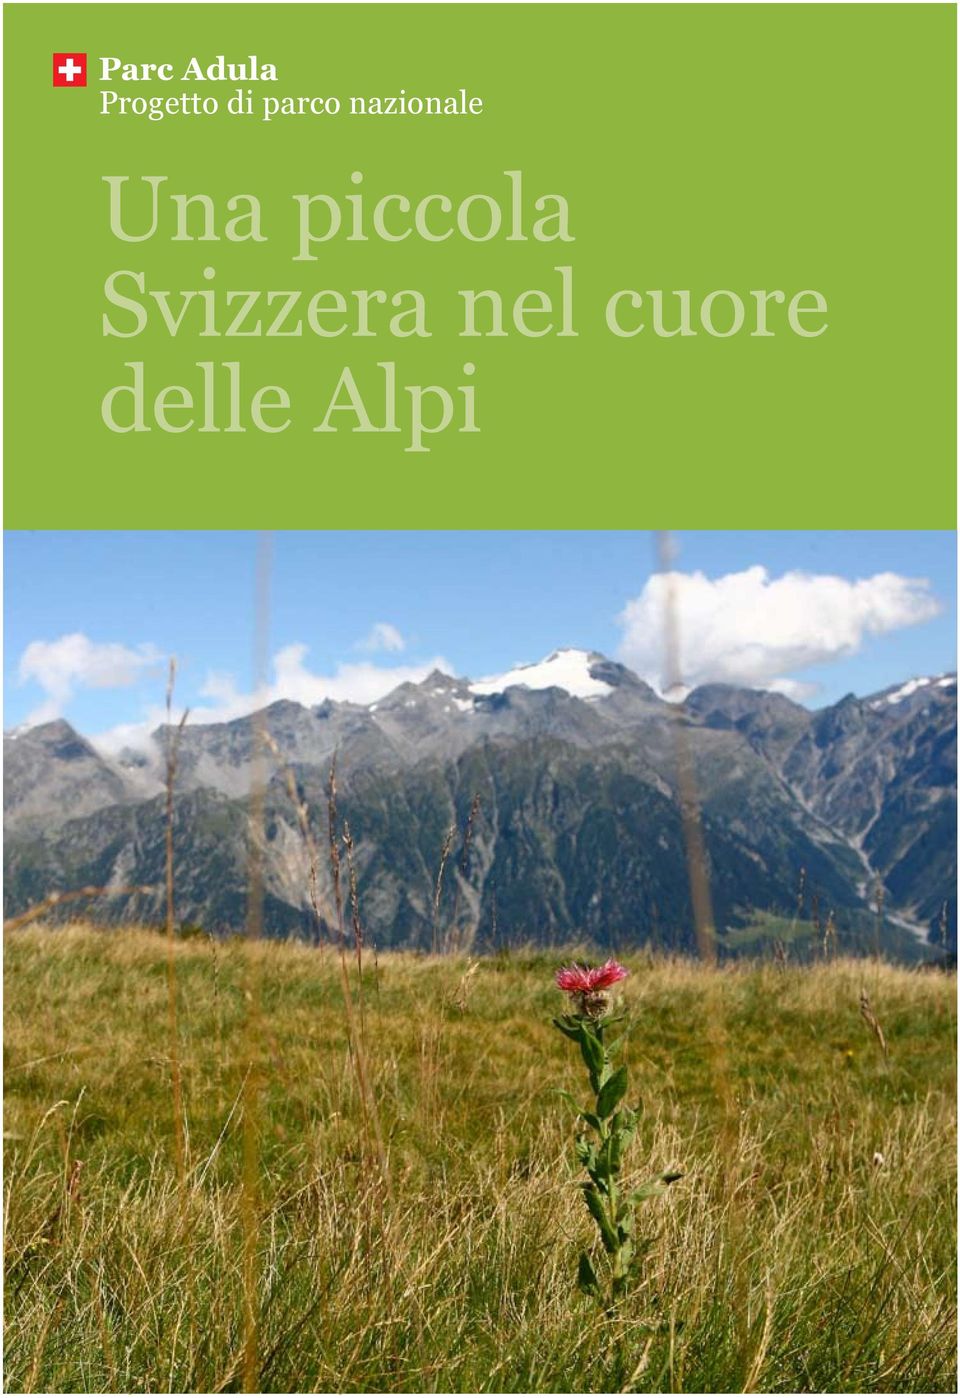 Alpi 1  Alpi, Associazione Parc Adula,